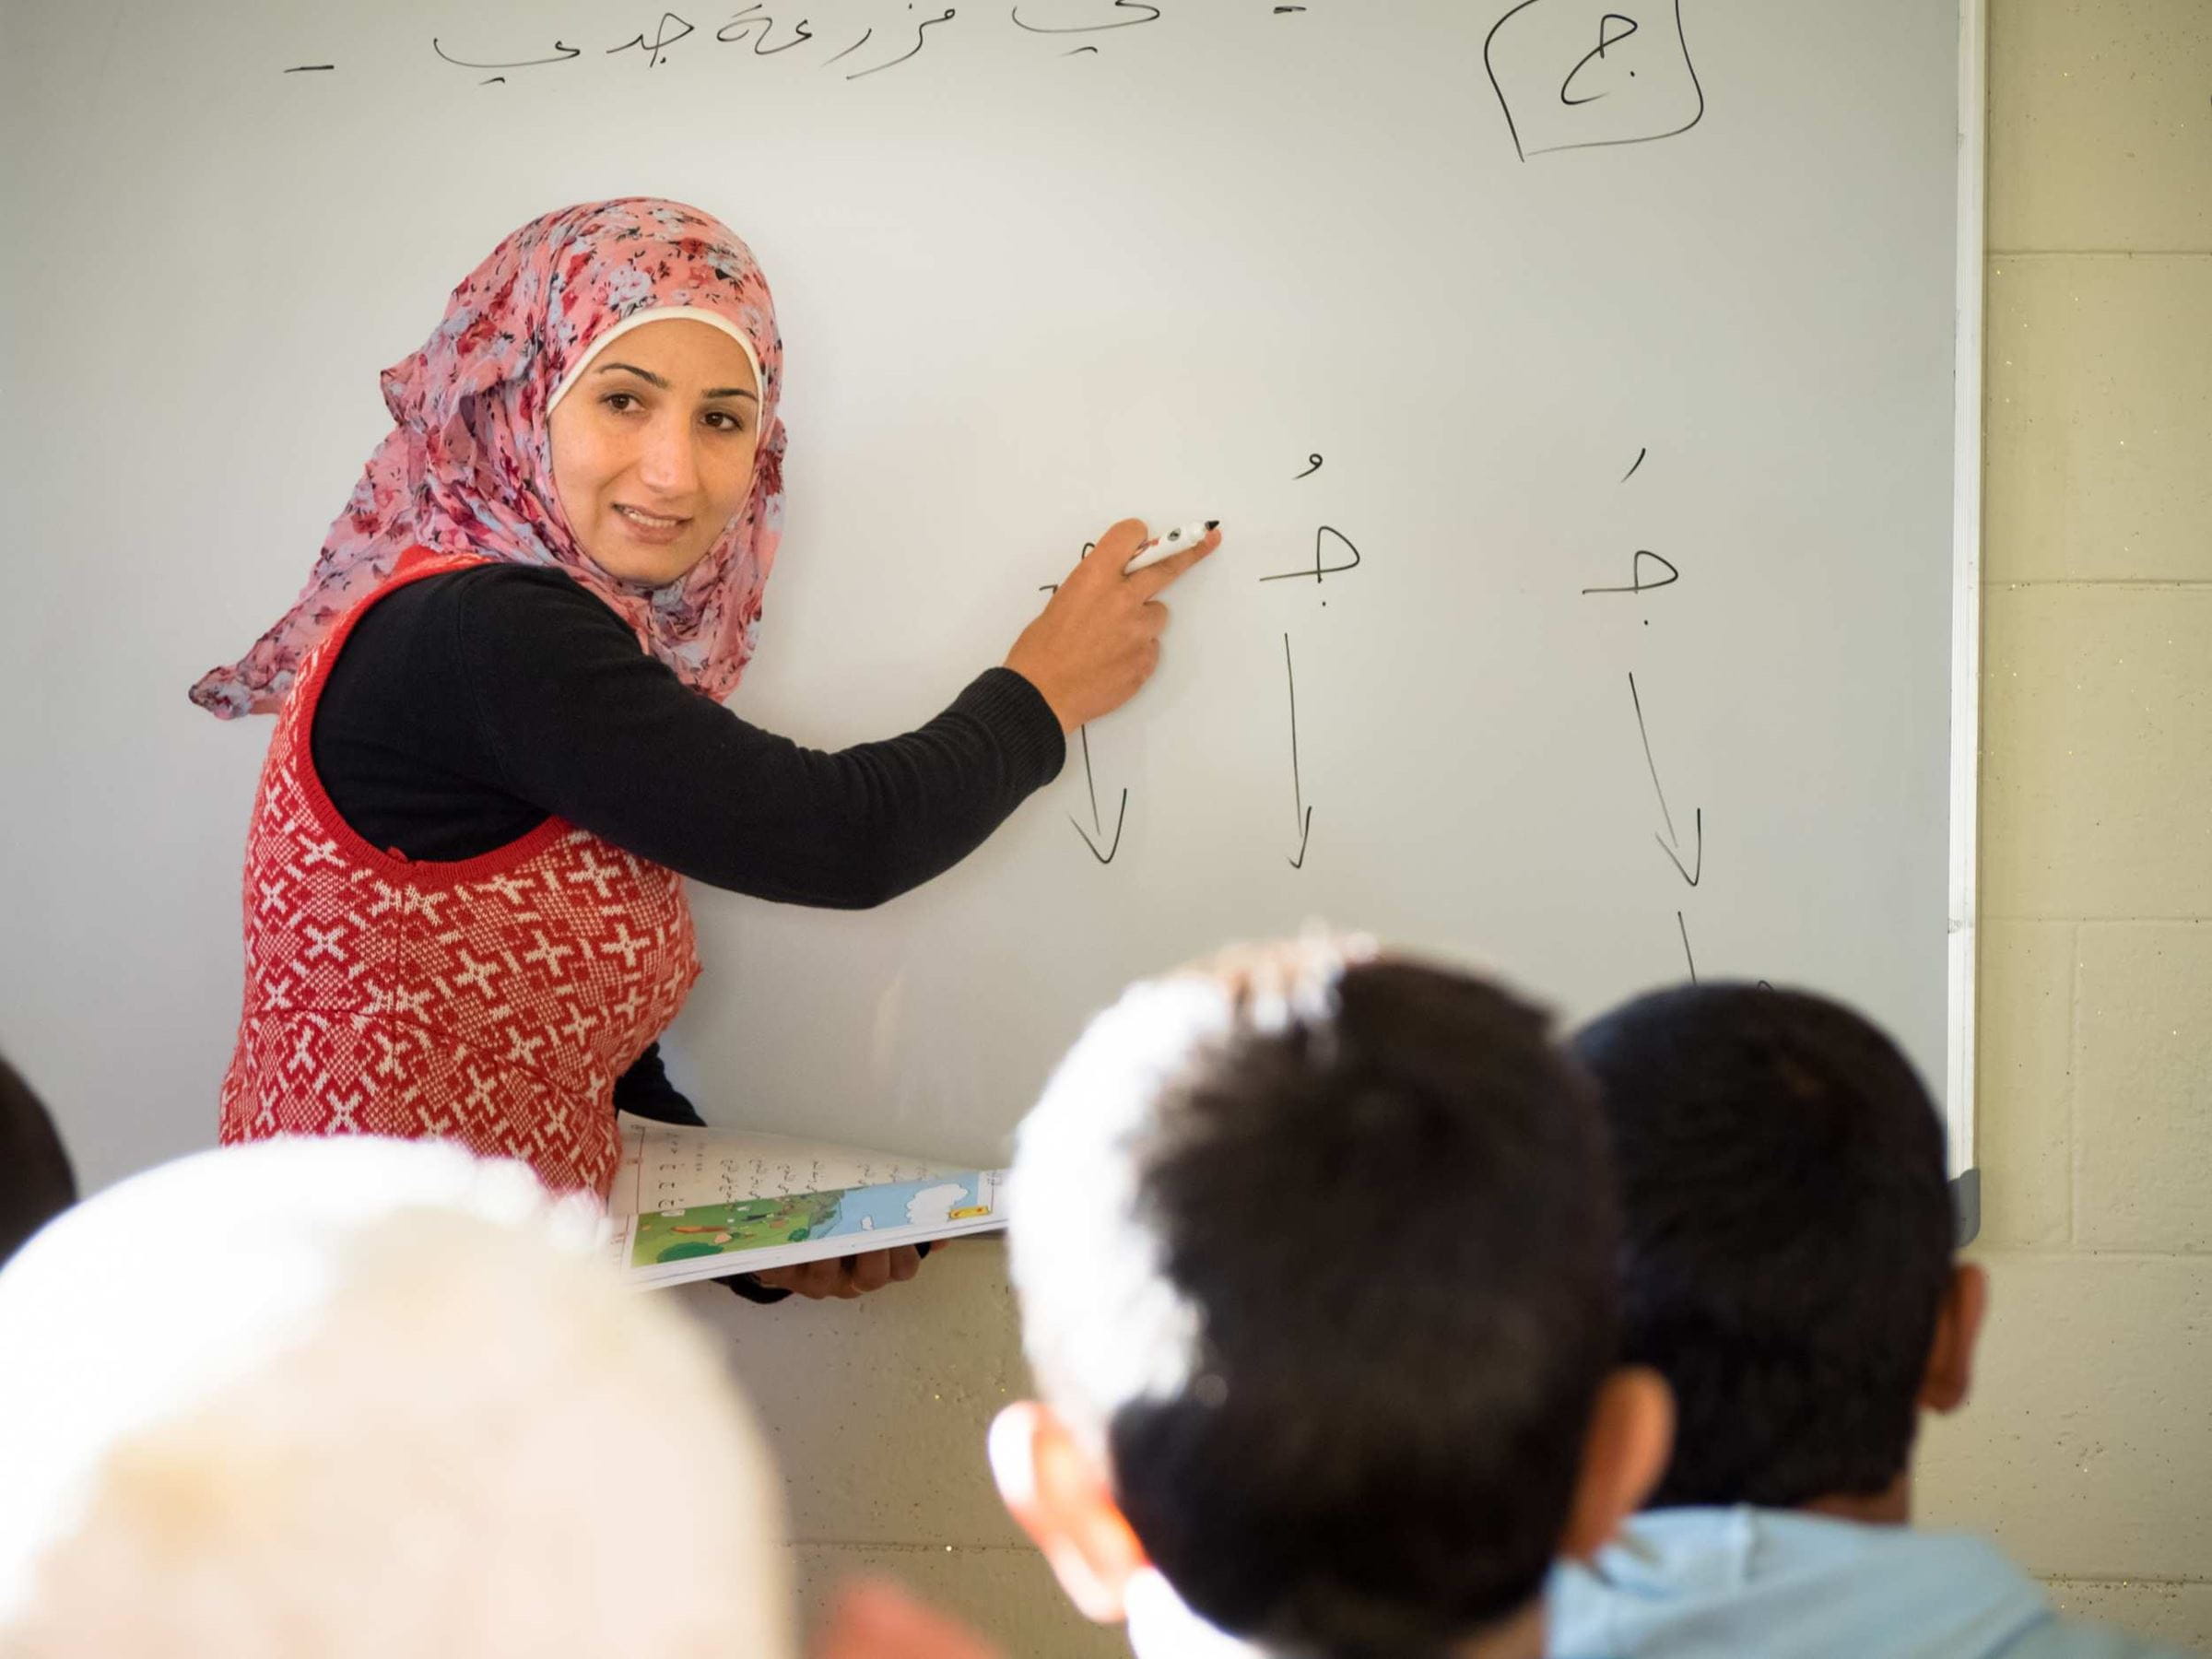 Unterricht in einer libanesischen Schule (Quelle: Stephen Davies)